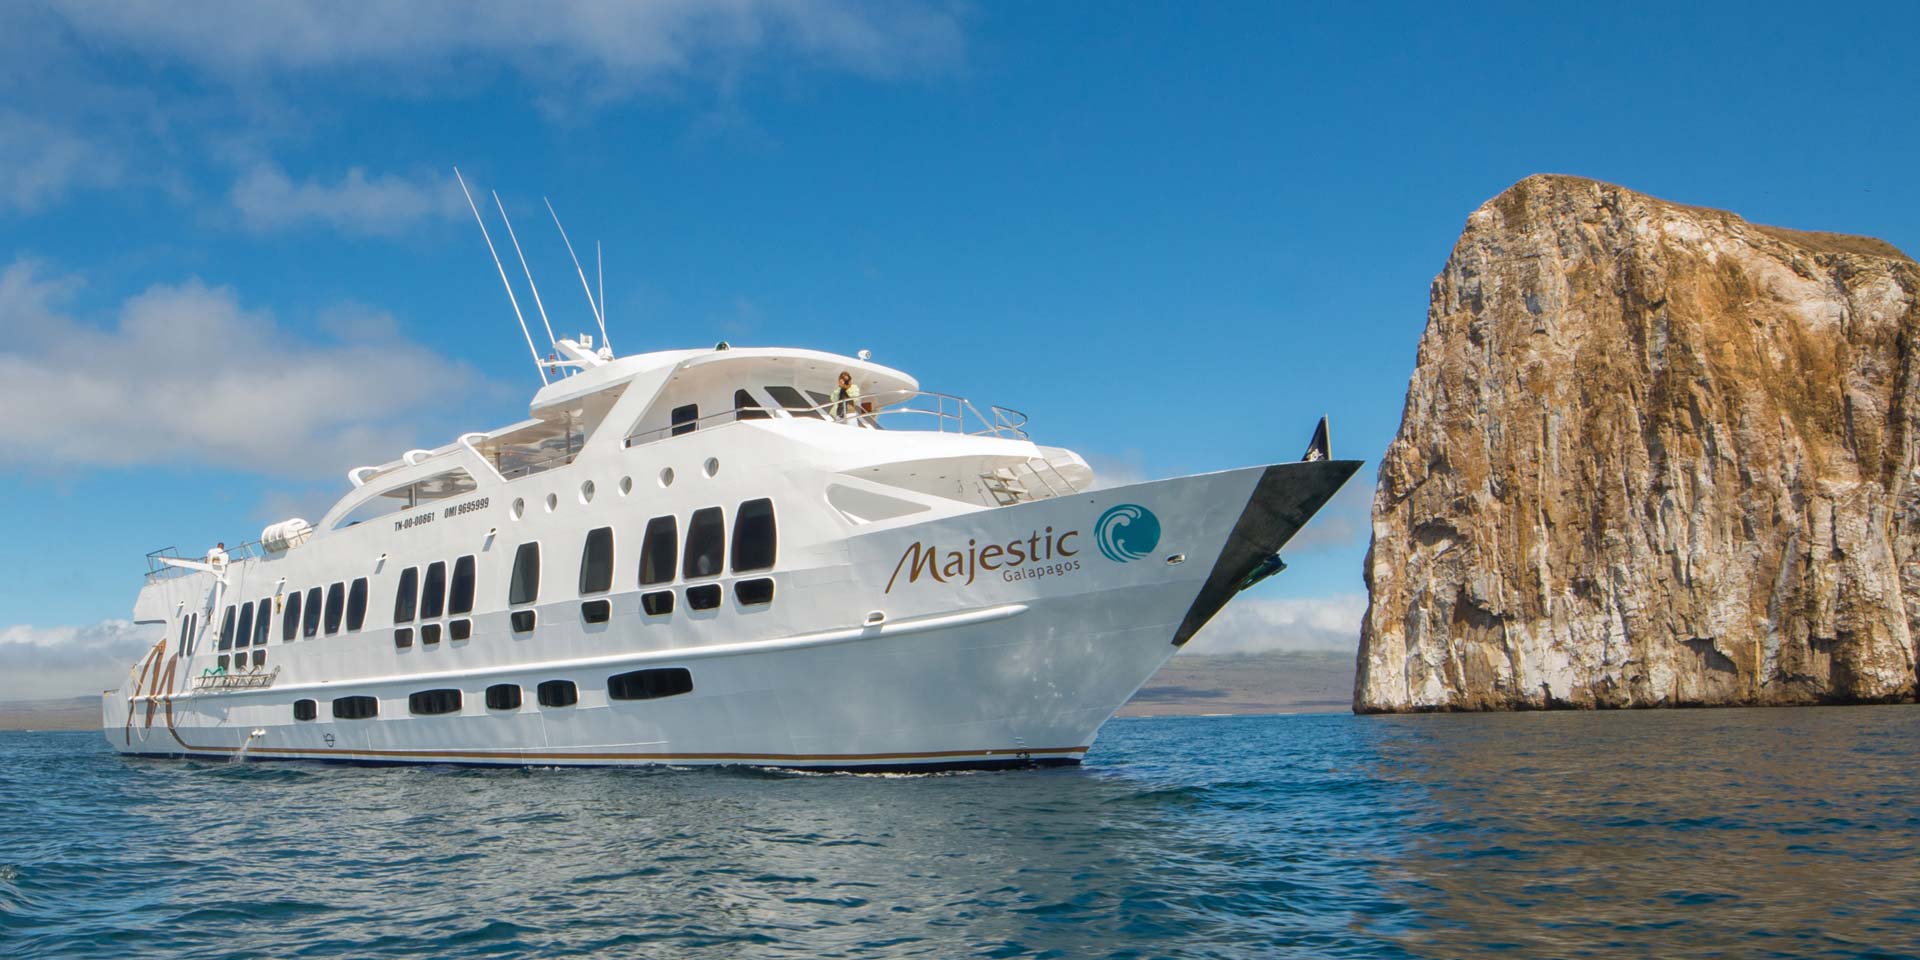 galapagos yacht tour